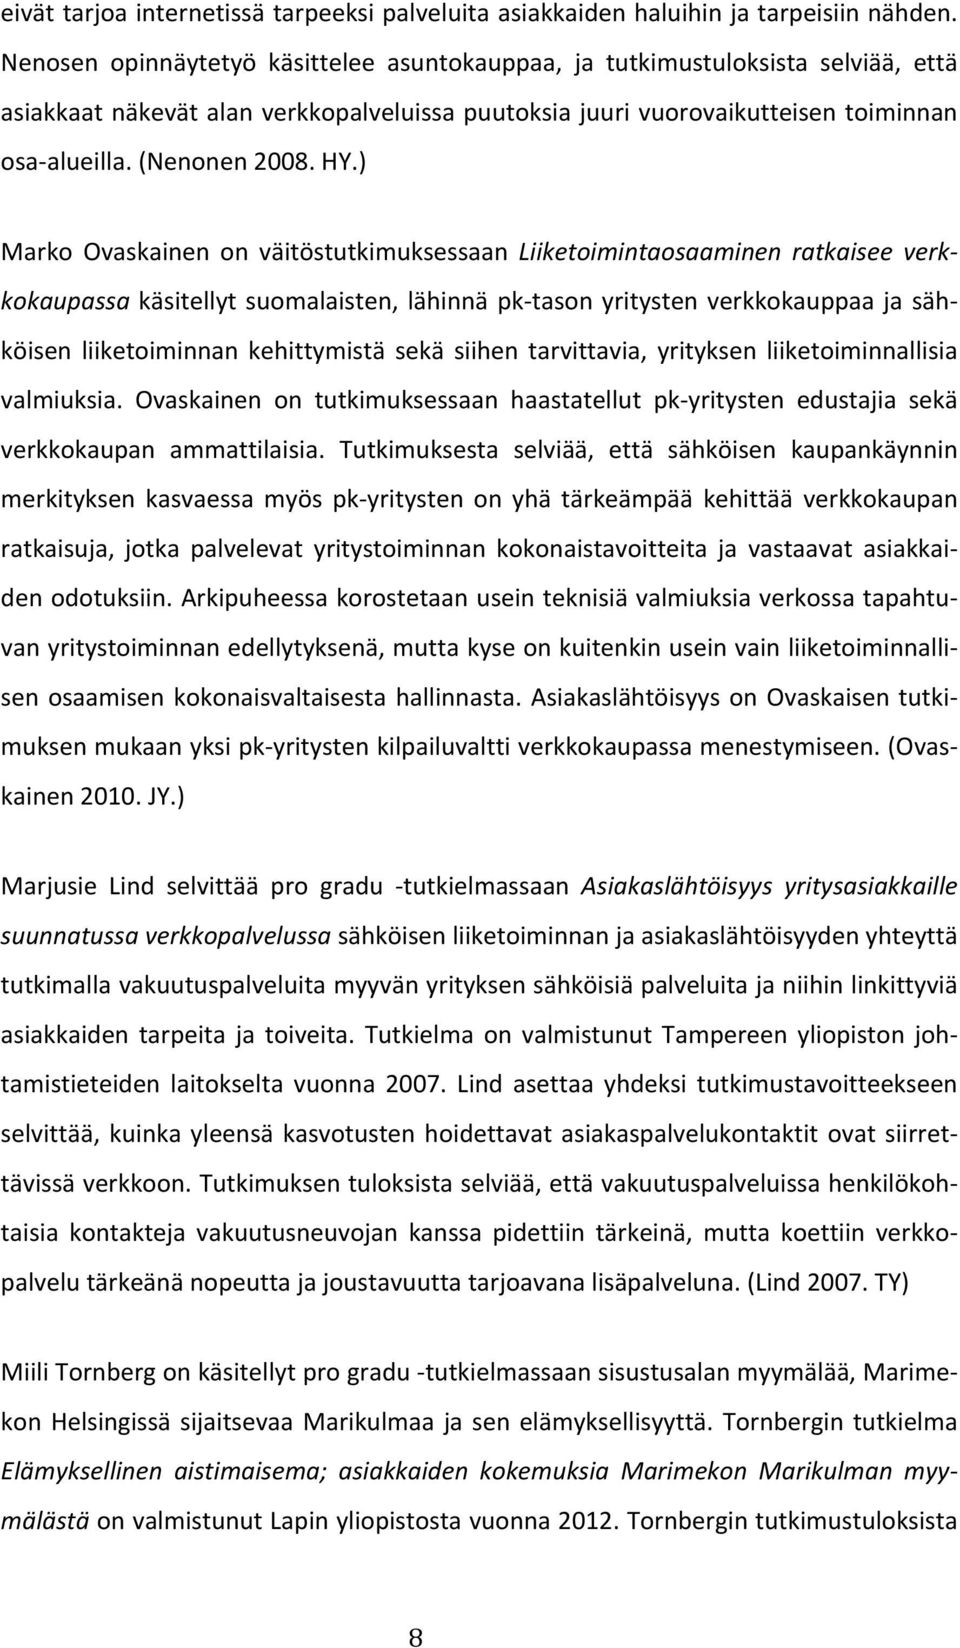 HY.) Marko Ovaskainen on väitöstutkimuksessaan Liiketoimintaosaaminen ratkaisee verk- kokaupassa käsitellyt suomalaisten, lähinnä pk- tason yritysten verkkokauppaa ja säh- köisen liiketoiminnan